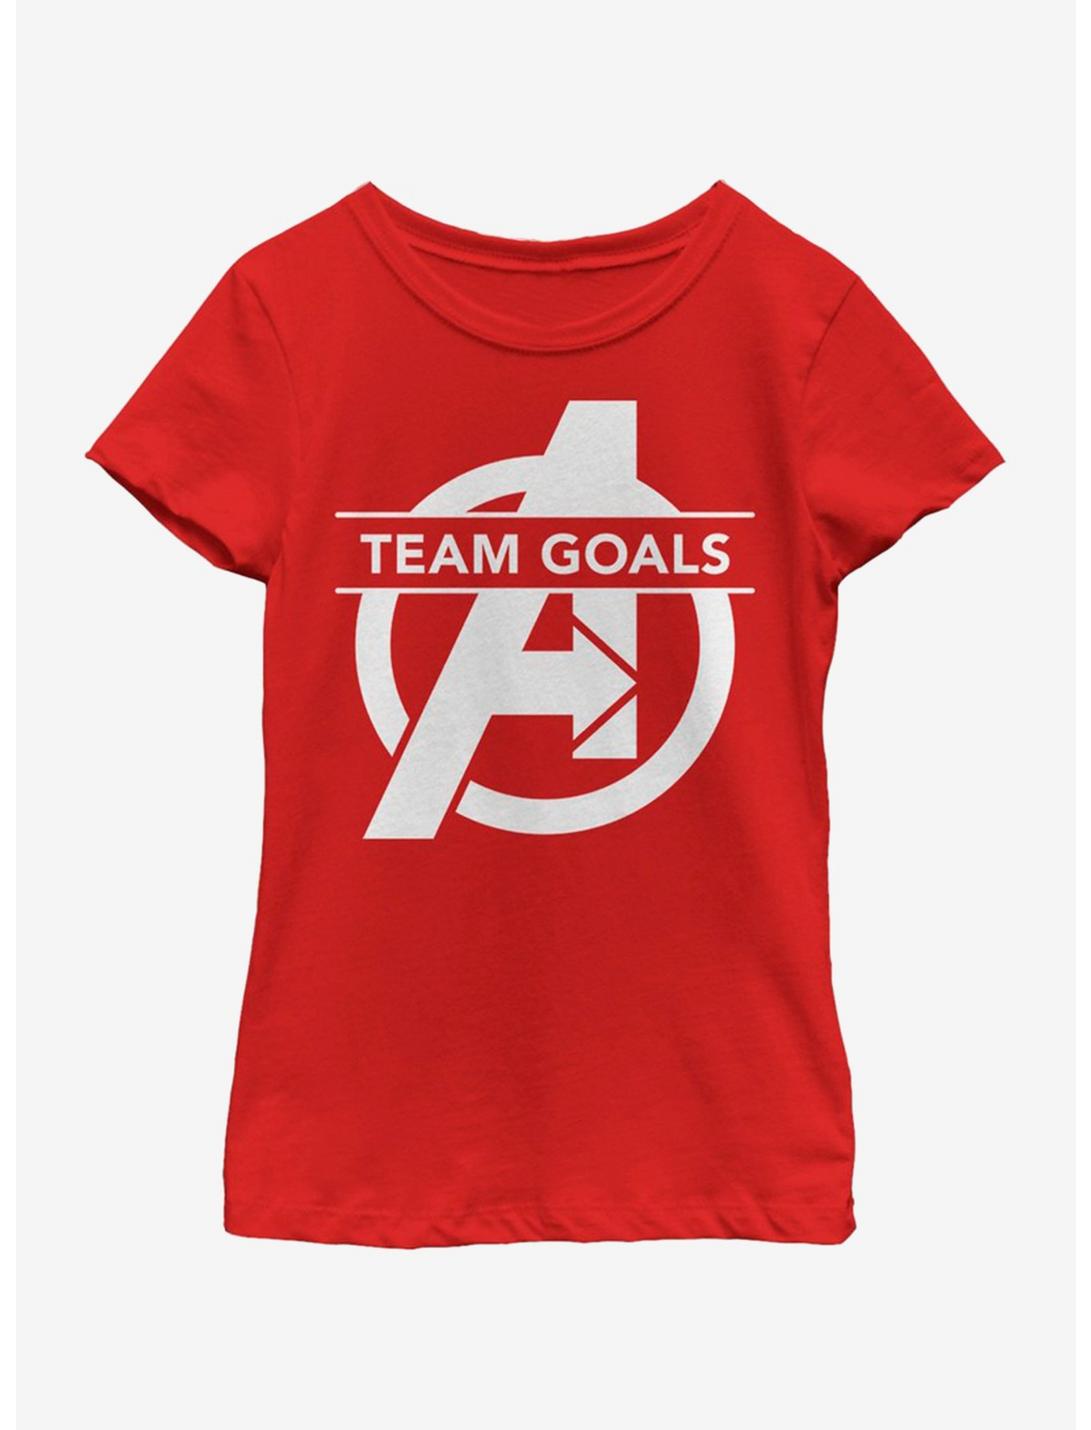 Marvel Avengers: Endgame Team Goals Youth Girls T-Shirt, RED, hi-res